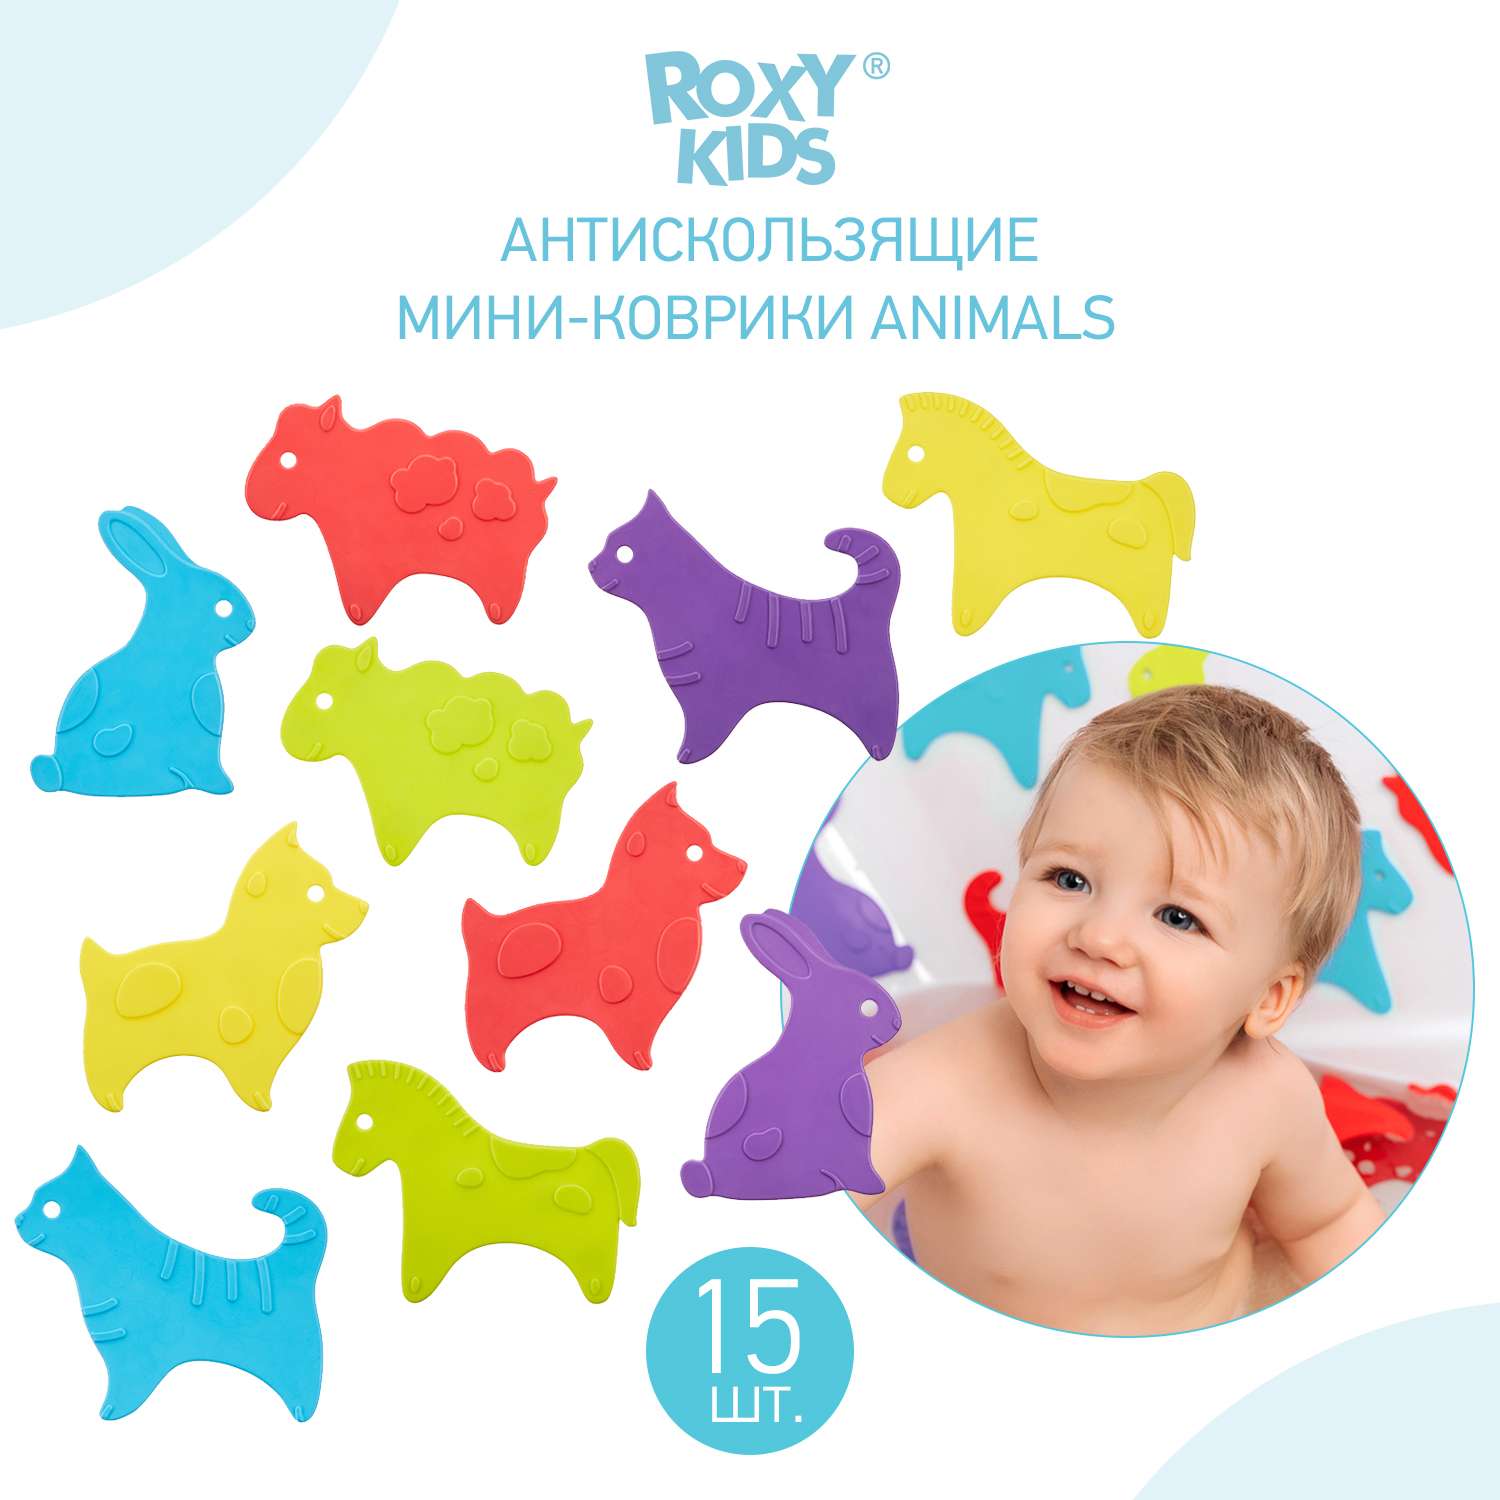 Мини-коврики детские ROXY-KIDS для ванной противоскользящие Animals 15 шт. - фото 1